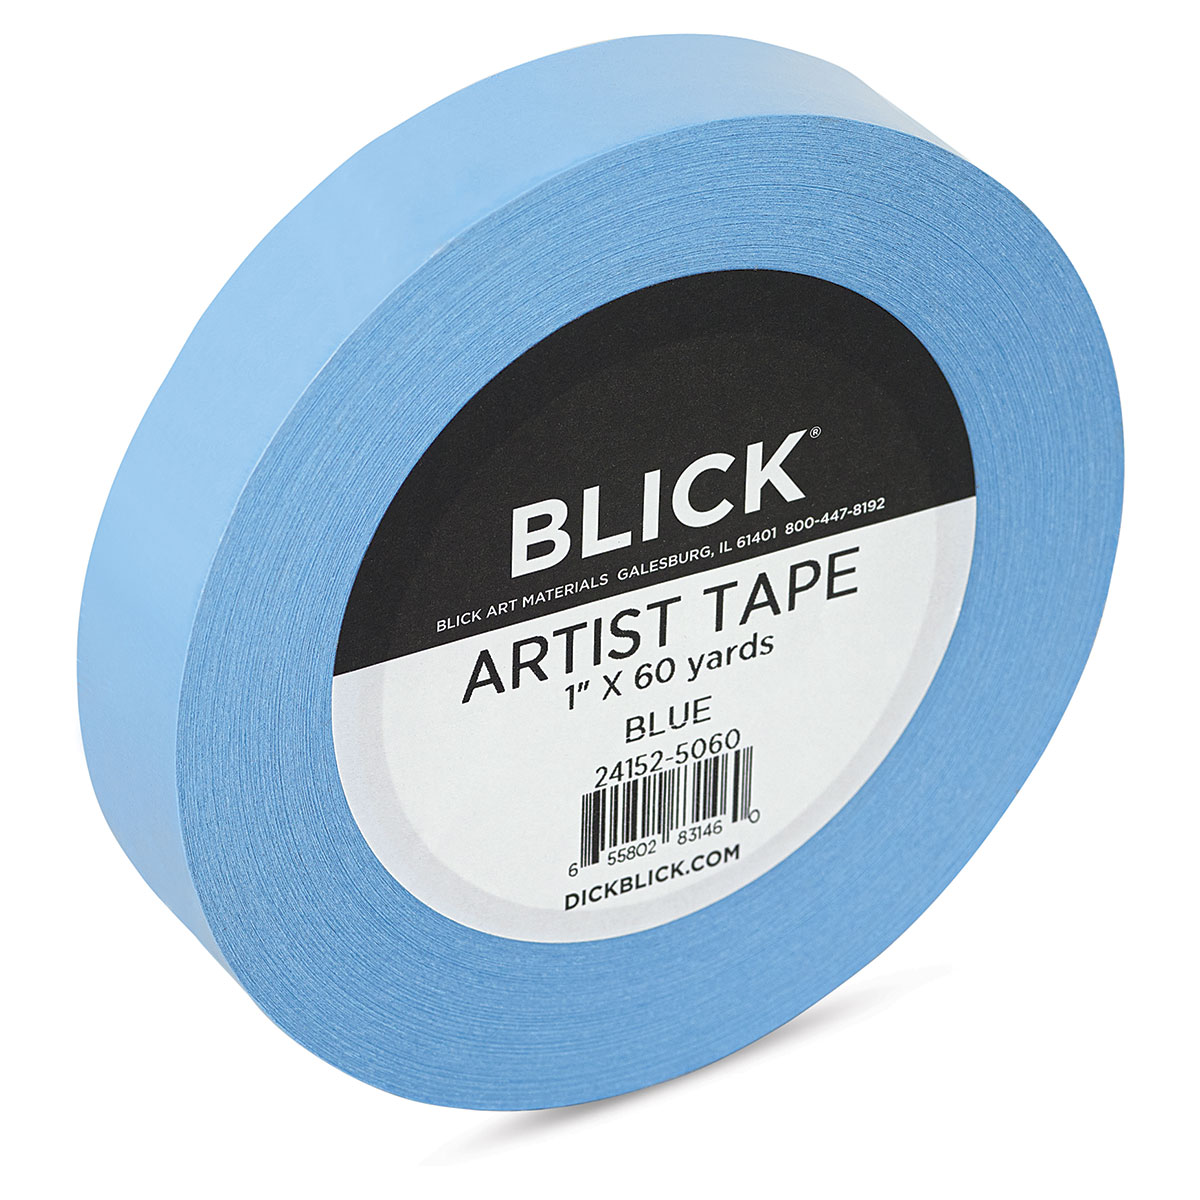 Art Alternatives Artist Tape 1X60 Yards White